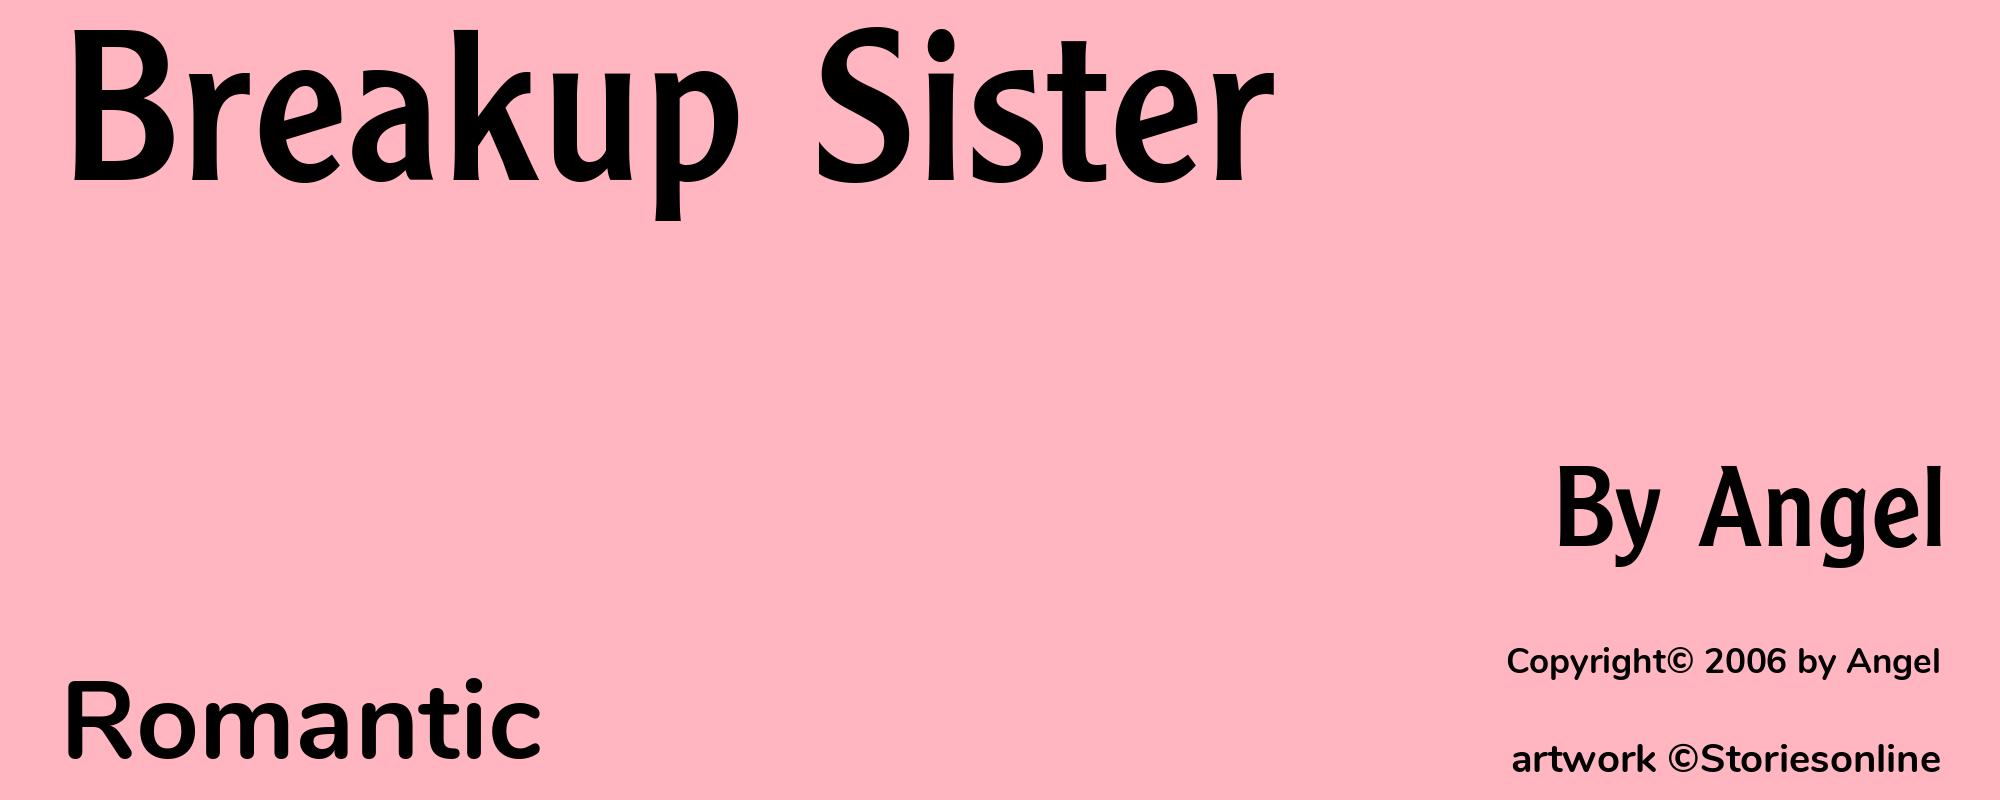 Breakup Sister - Cover